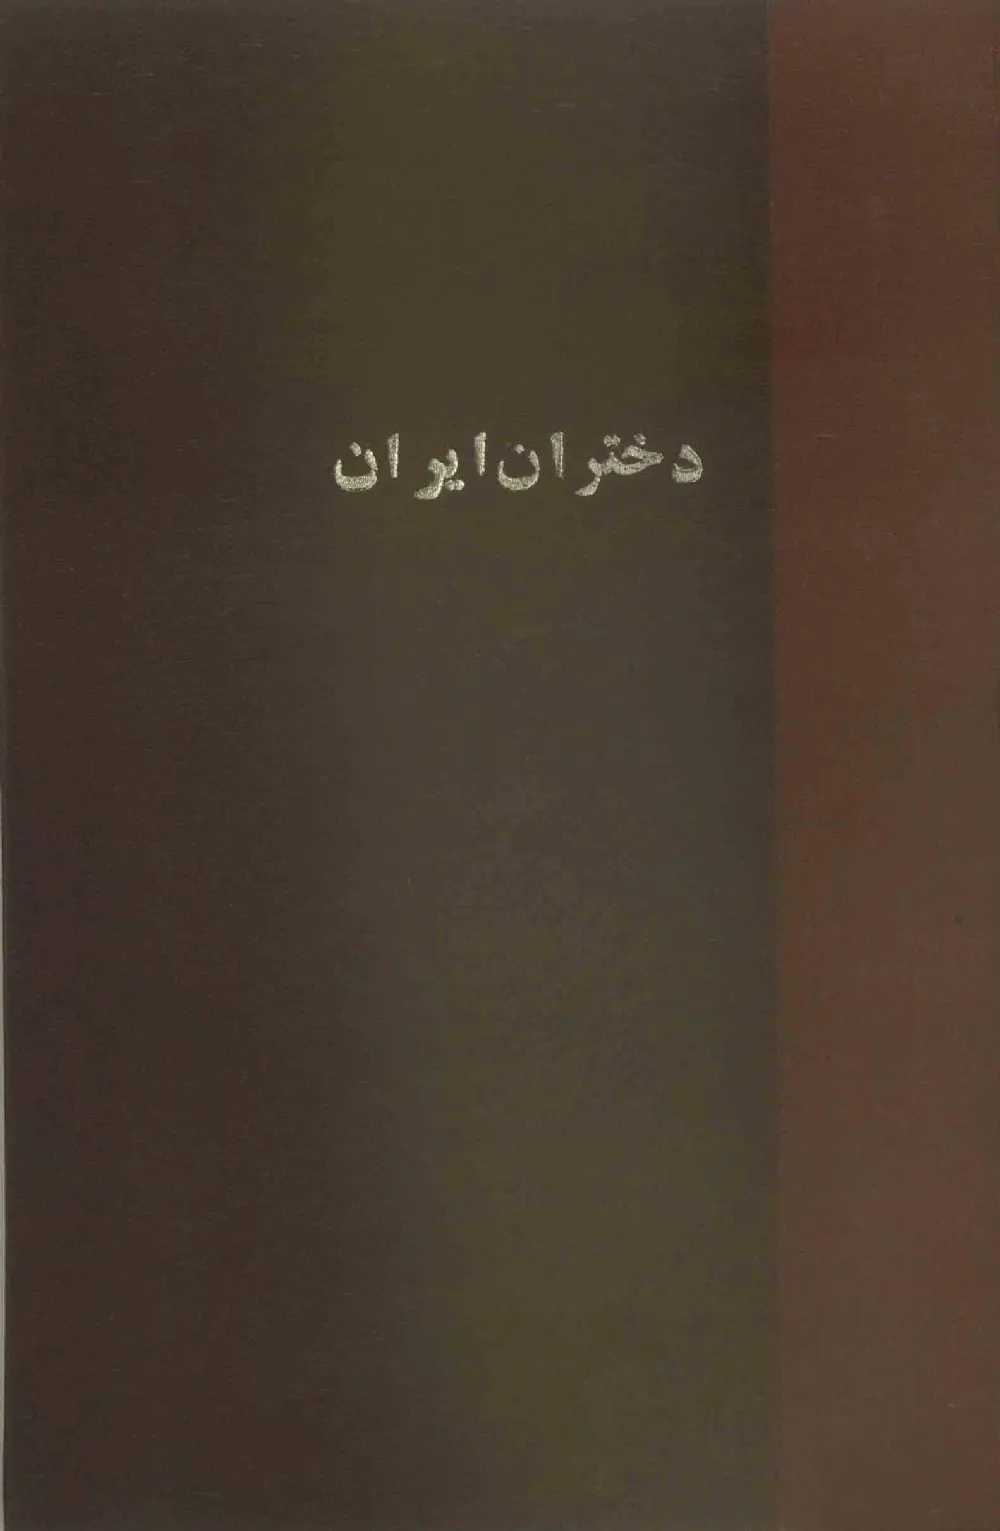 مجله ماهیانه مصور دختران ایران - شماره 6 و 7 - سال 1311